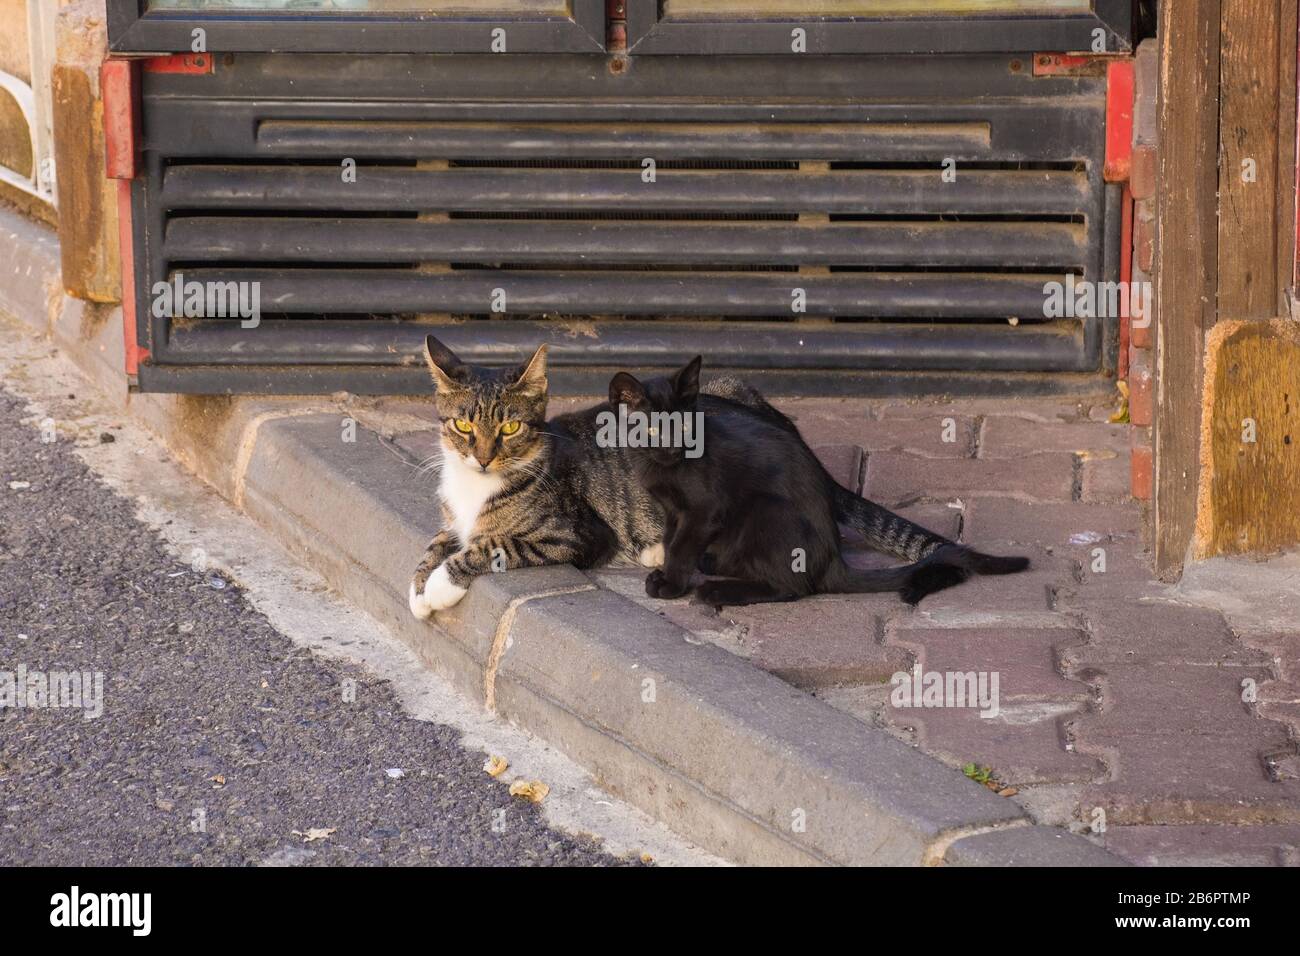 Un gato callejero y su gatito en la isla de Buyukada, una de las Islas de los precios, también conocida como Adalar, en el Mar de Mármara frente a la costa de Istanb Foto de stock